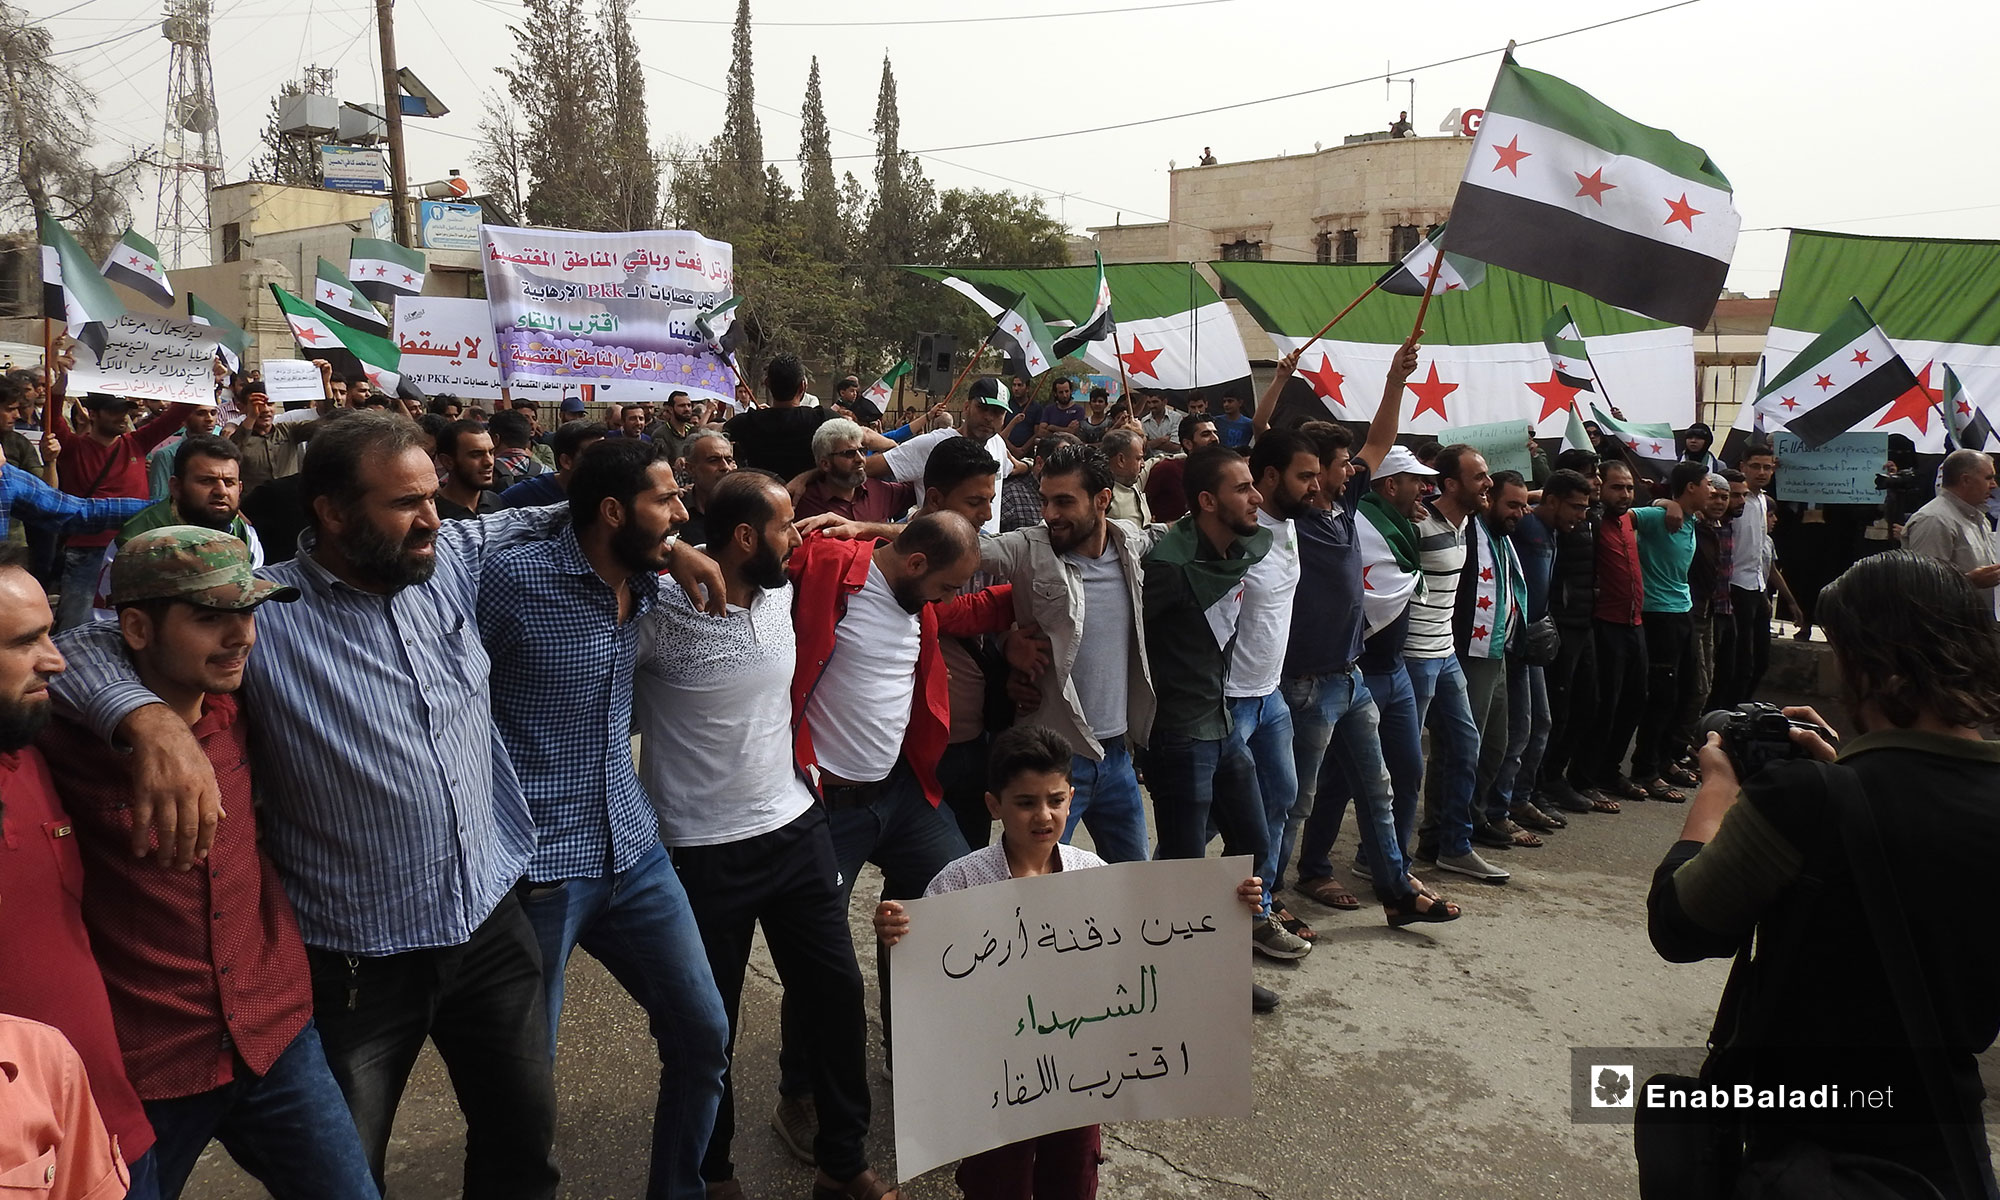 مظاهرة في مدينة اعزاز بريف حلب الشمالي - 12 من تشرين الأول 2018 (عنب بلدي)